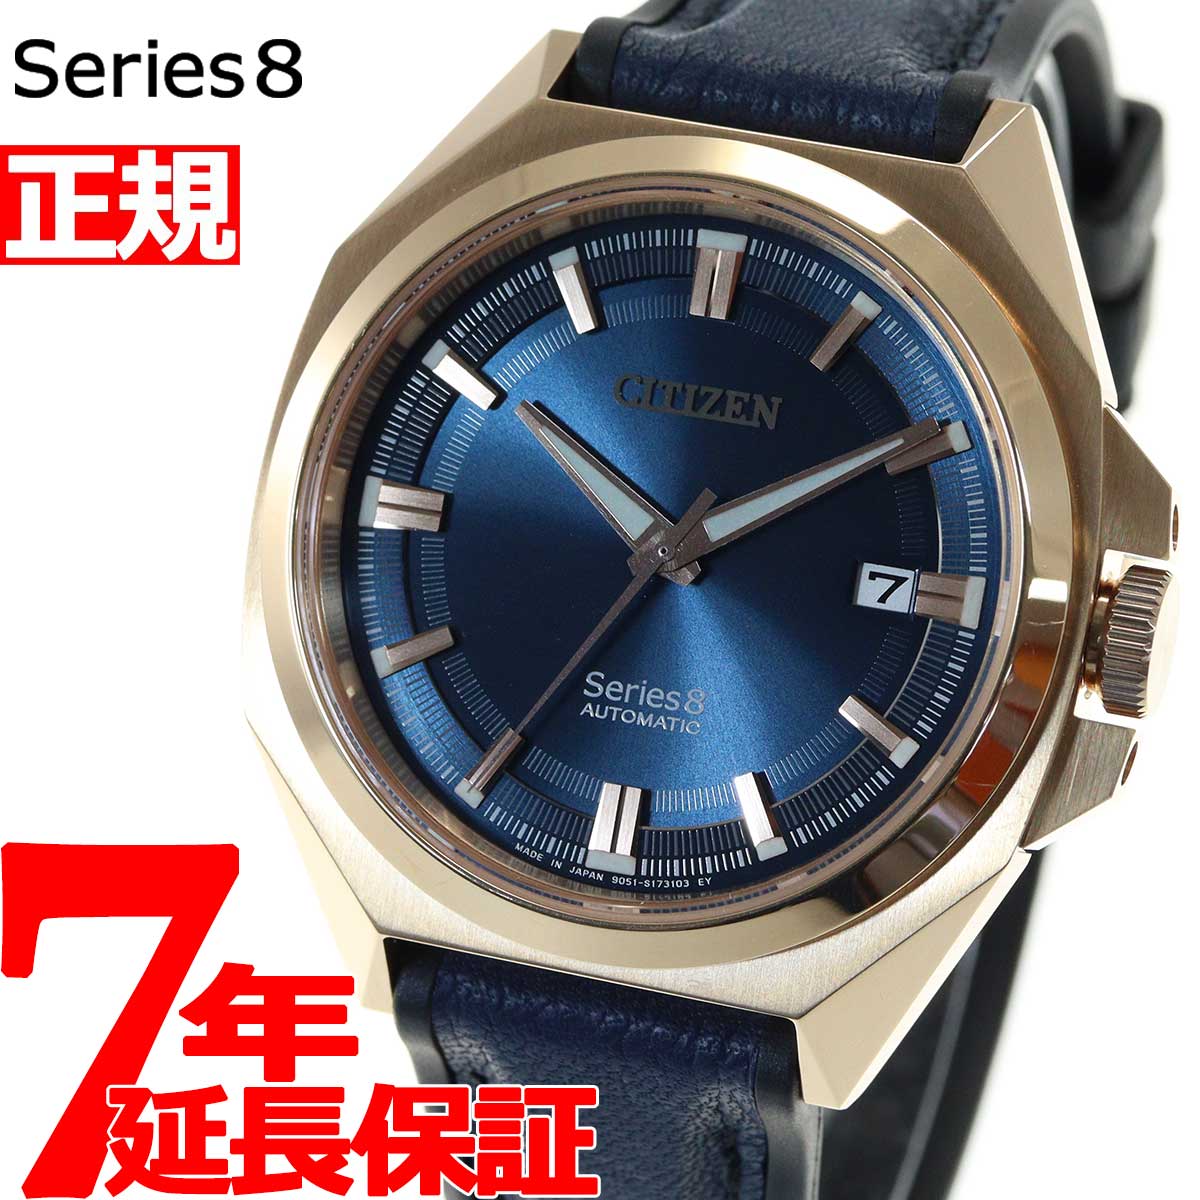 シチズン シリーズ 8 831 メカニカル 腕時計 メンズ 耐磁2種 日本製